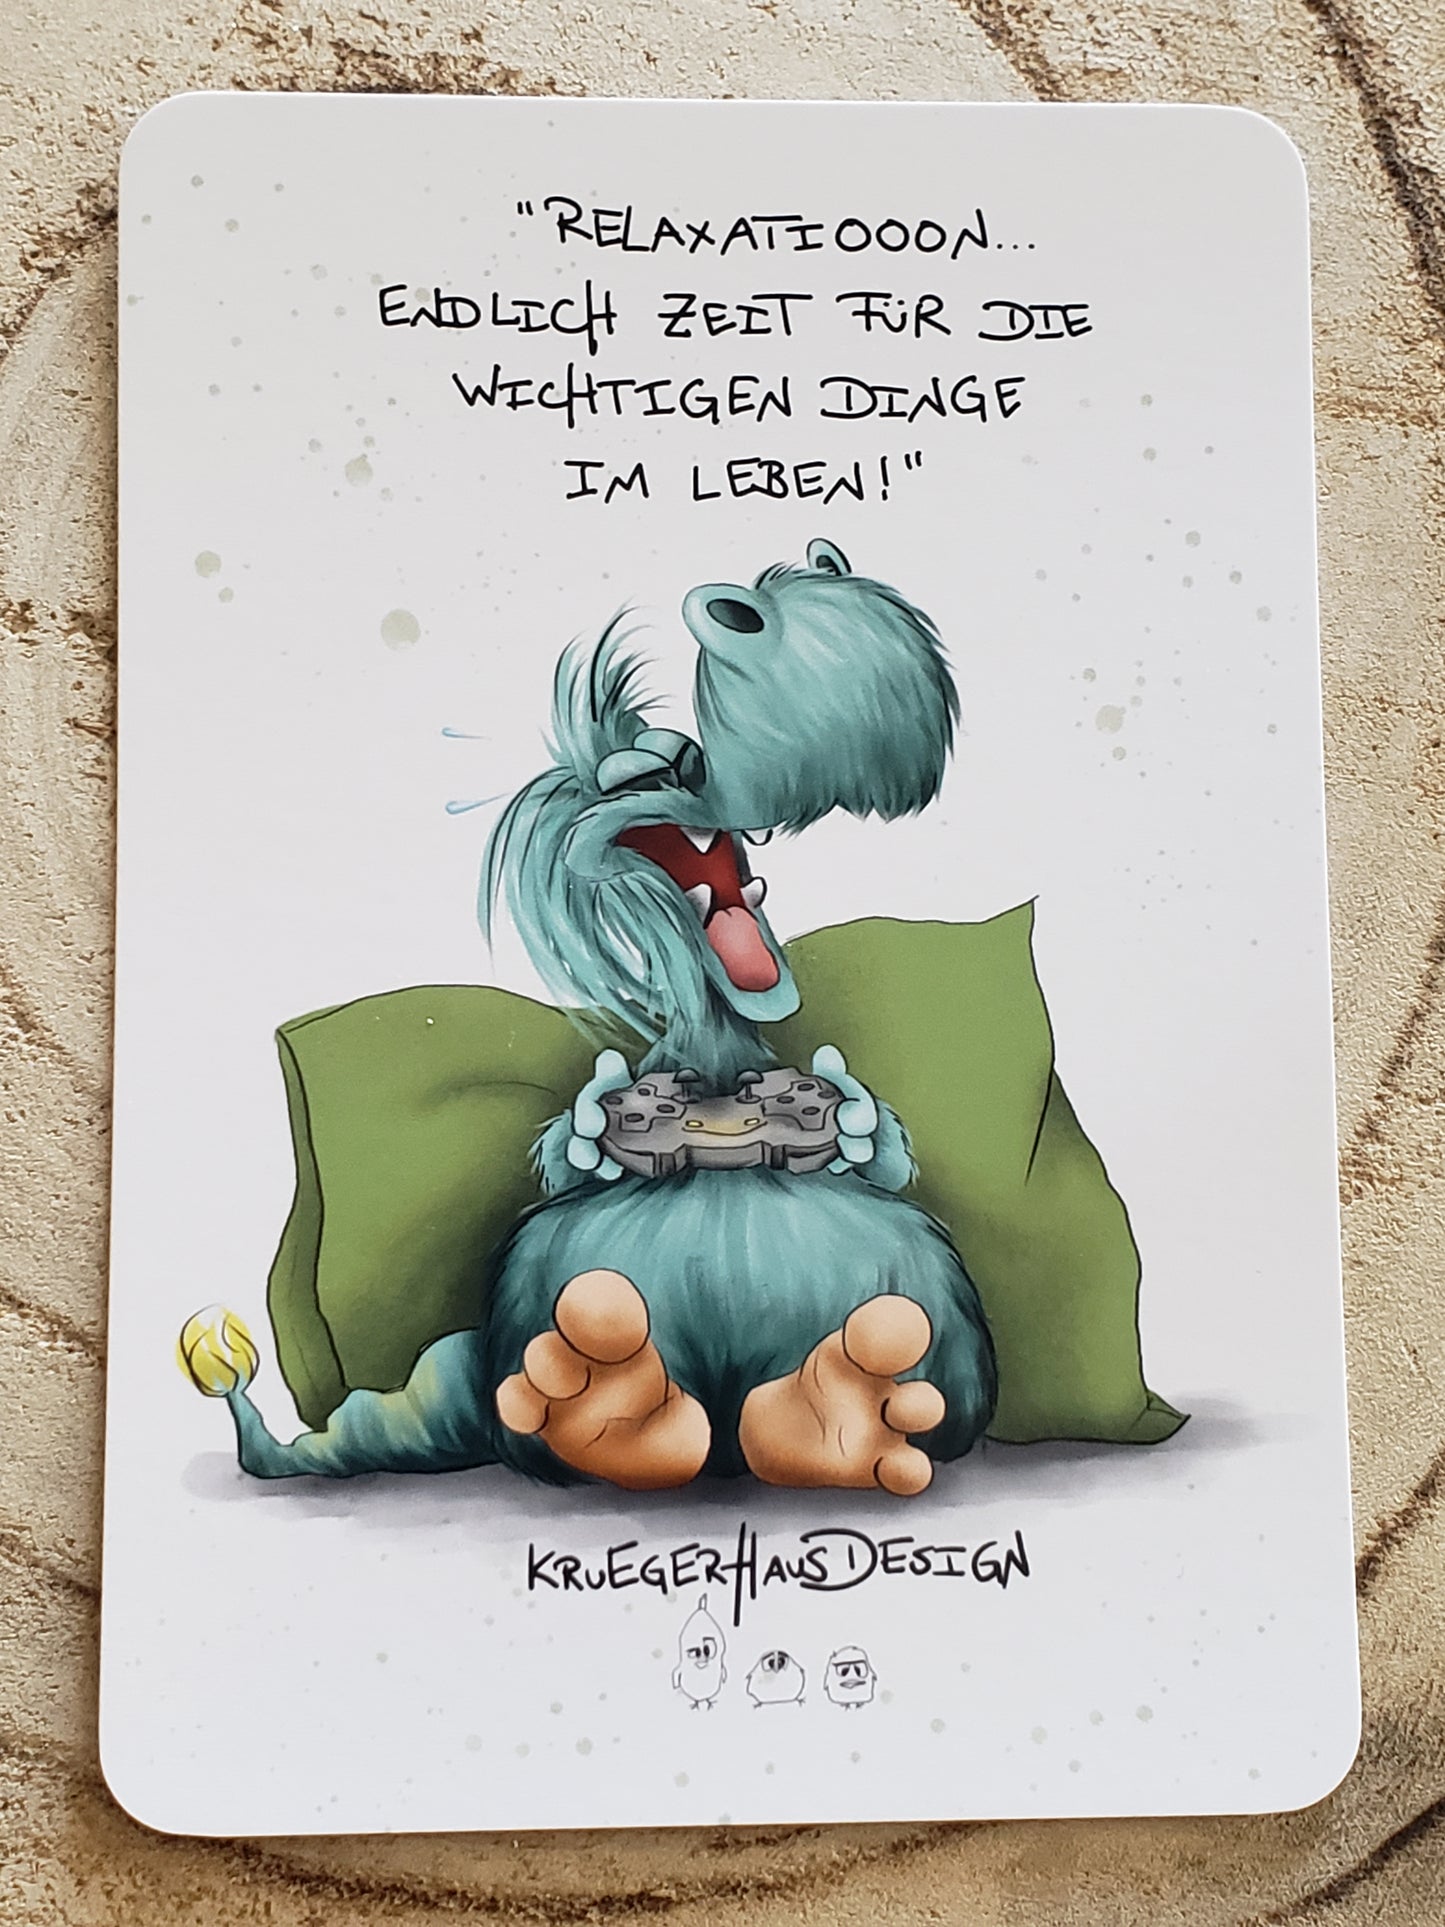 Postkarte Monster Kruegerhausdesign mit Spruch "Relaxation... endlich Zeit für..."